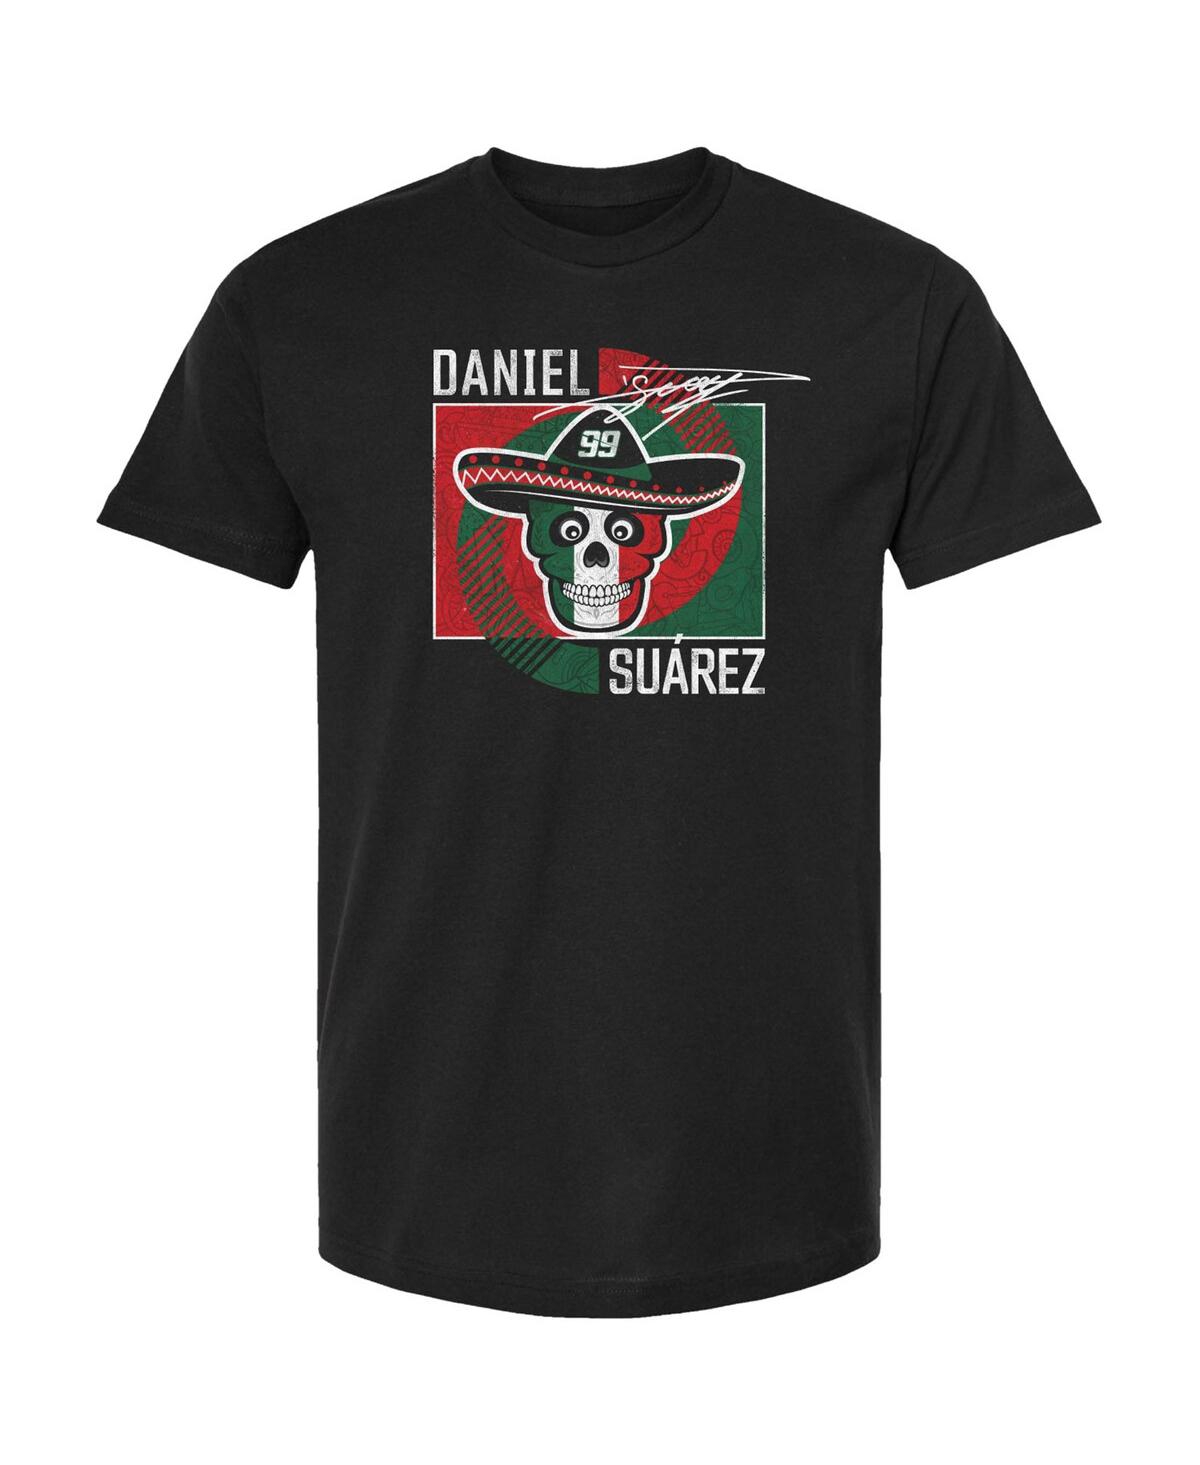 Shop Trackhouse Racing Team Collection Men's  Black Daniel Suarez Vivo T-shirt